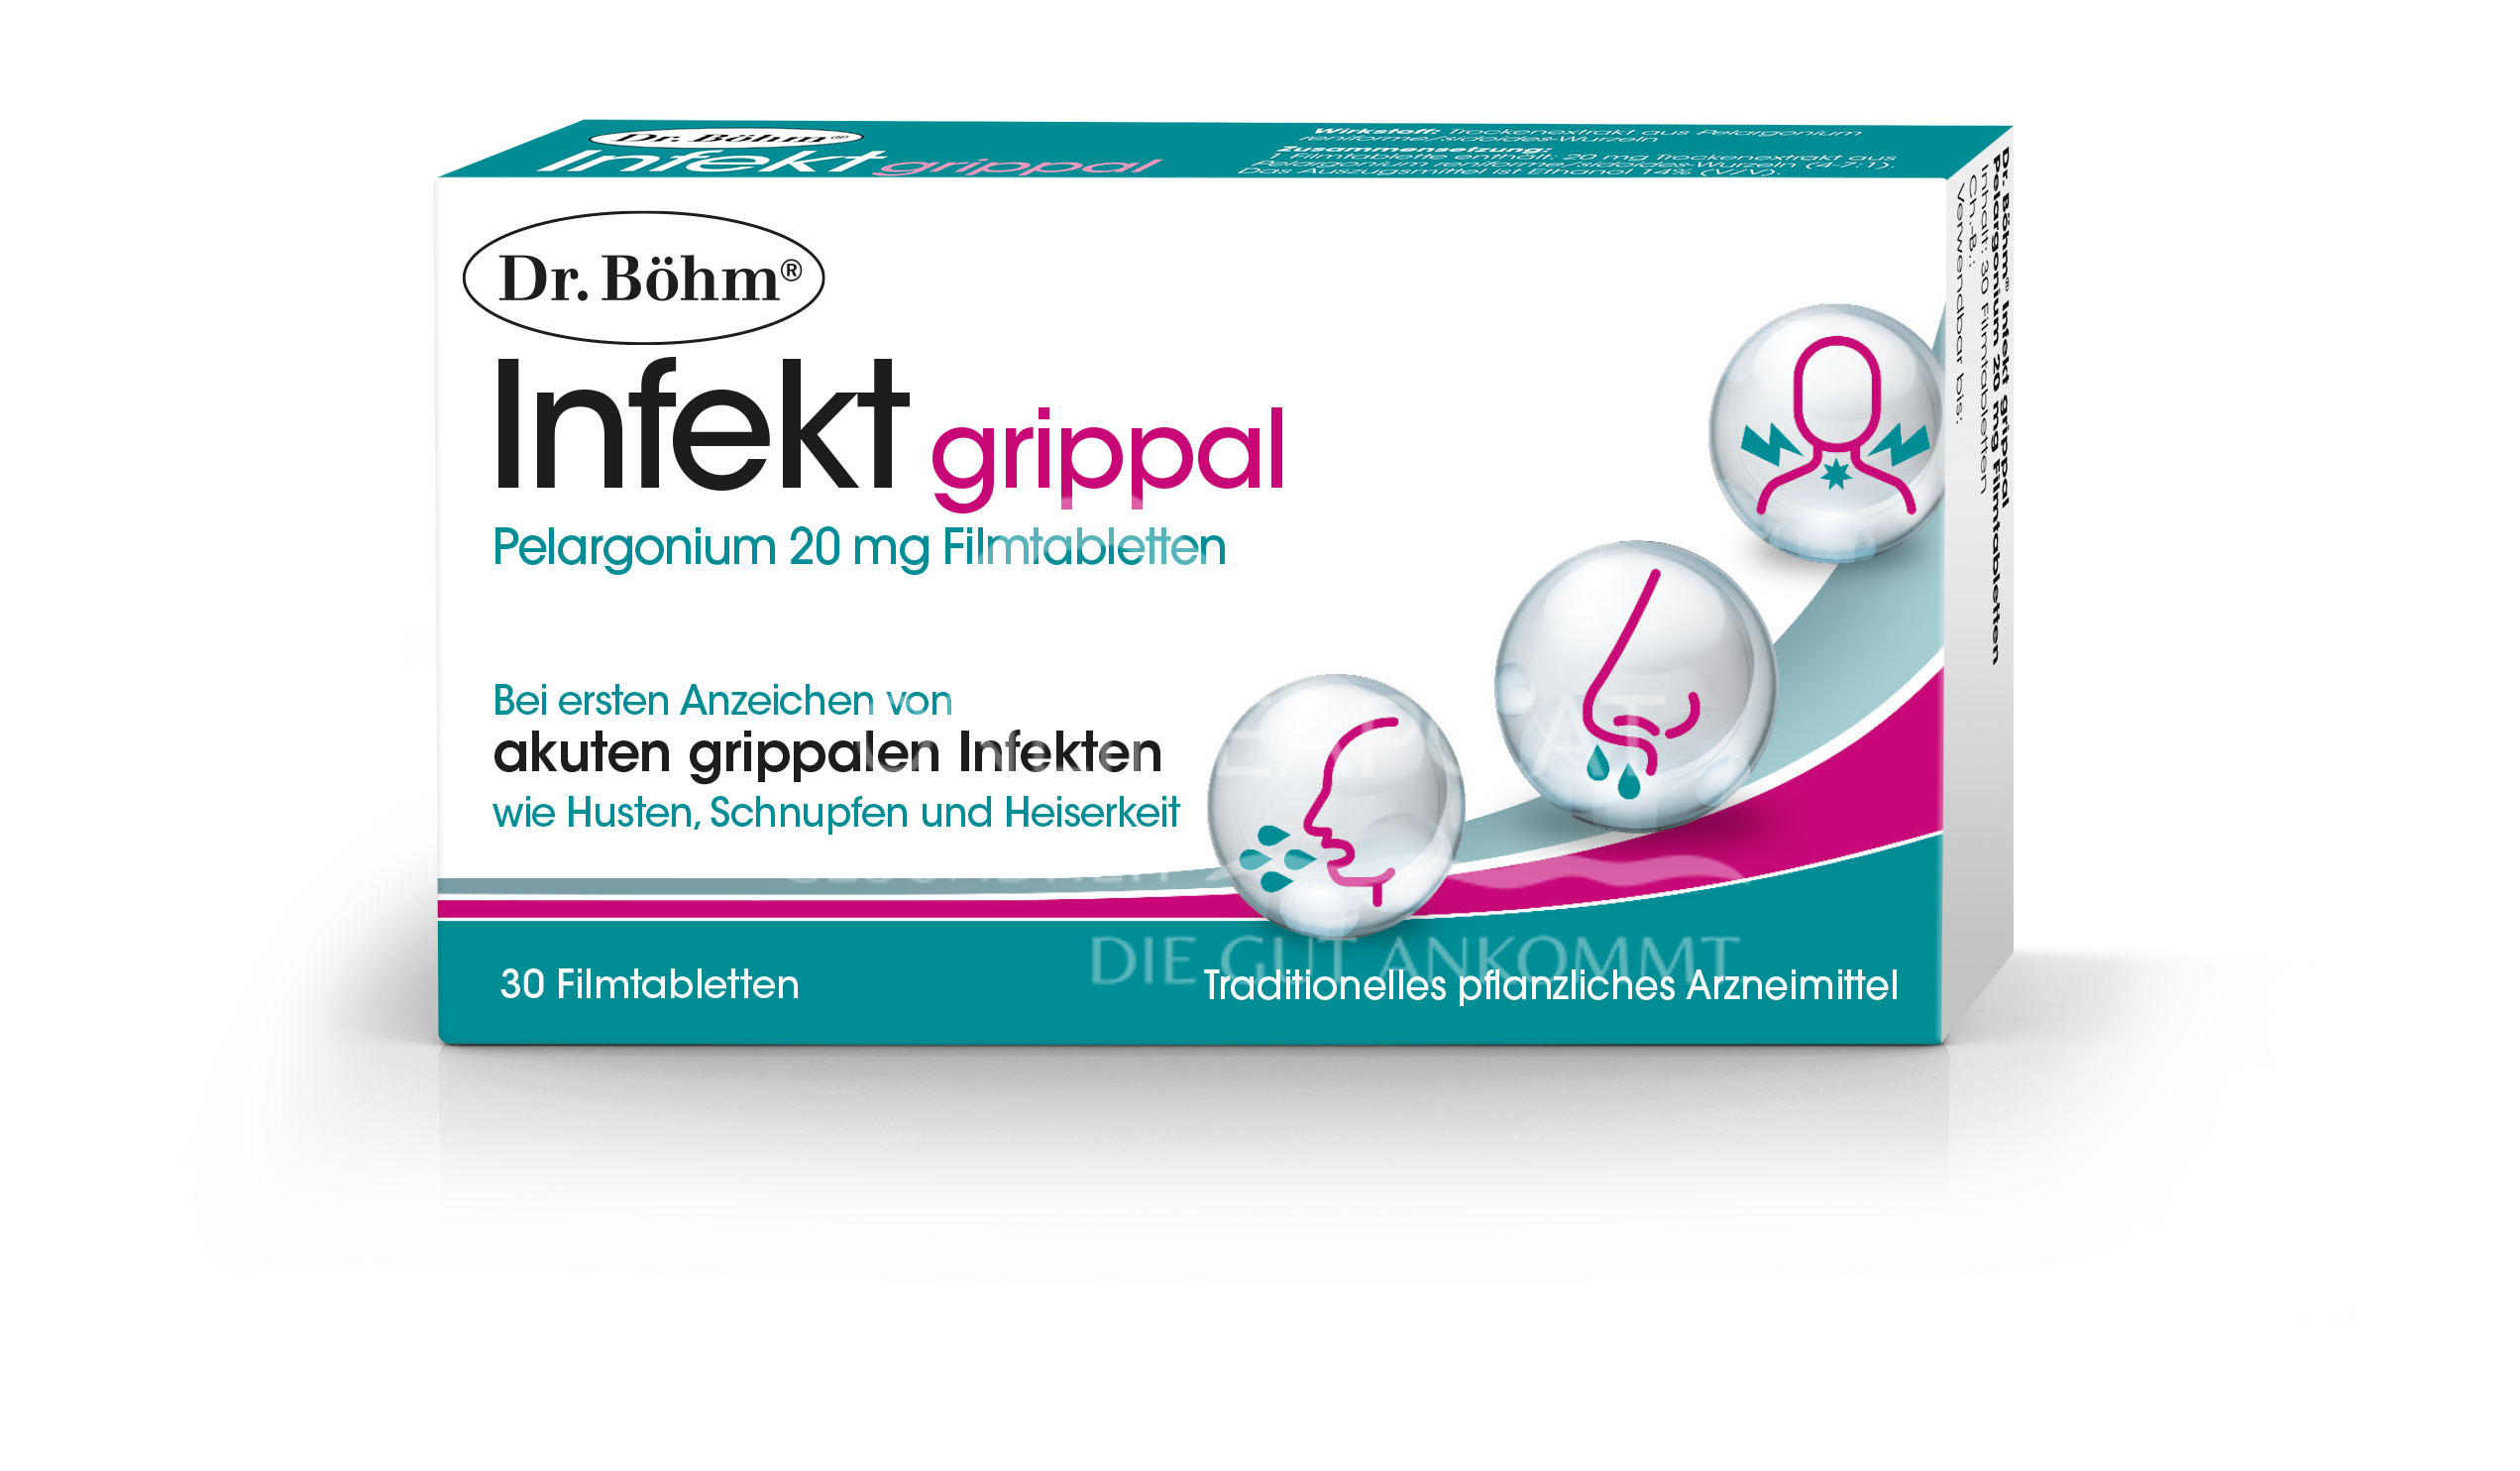 Dr. Böhm® Infekt grippal Pelargonium 20 mg Filmtabletten